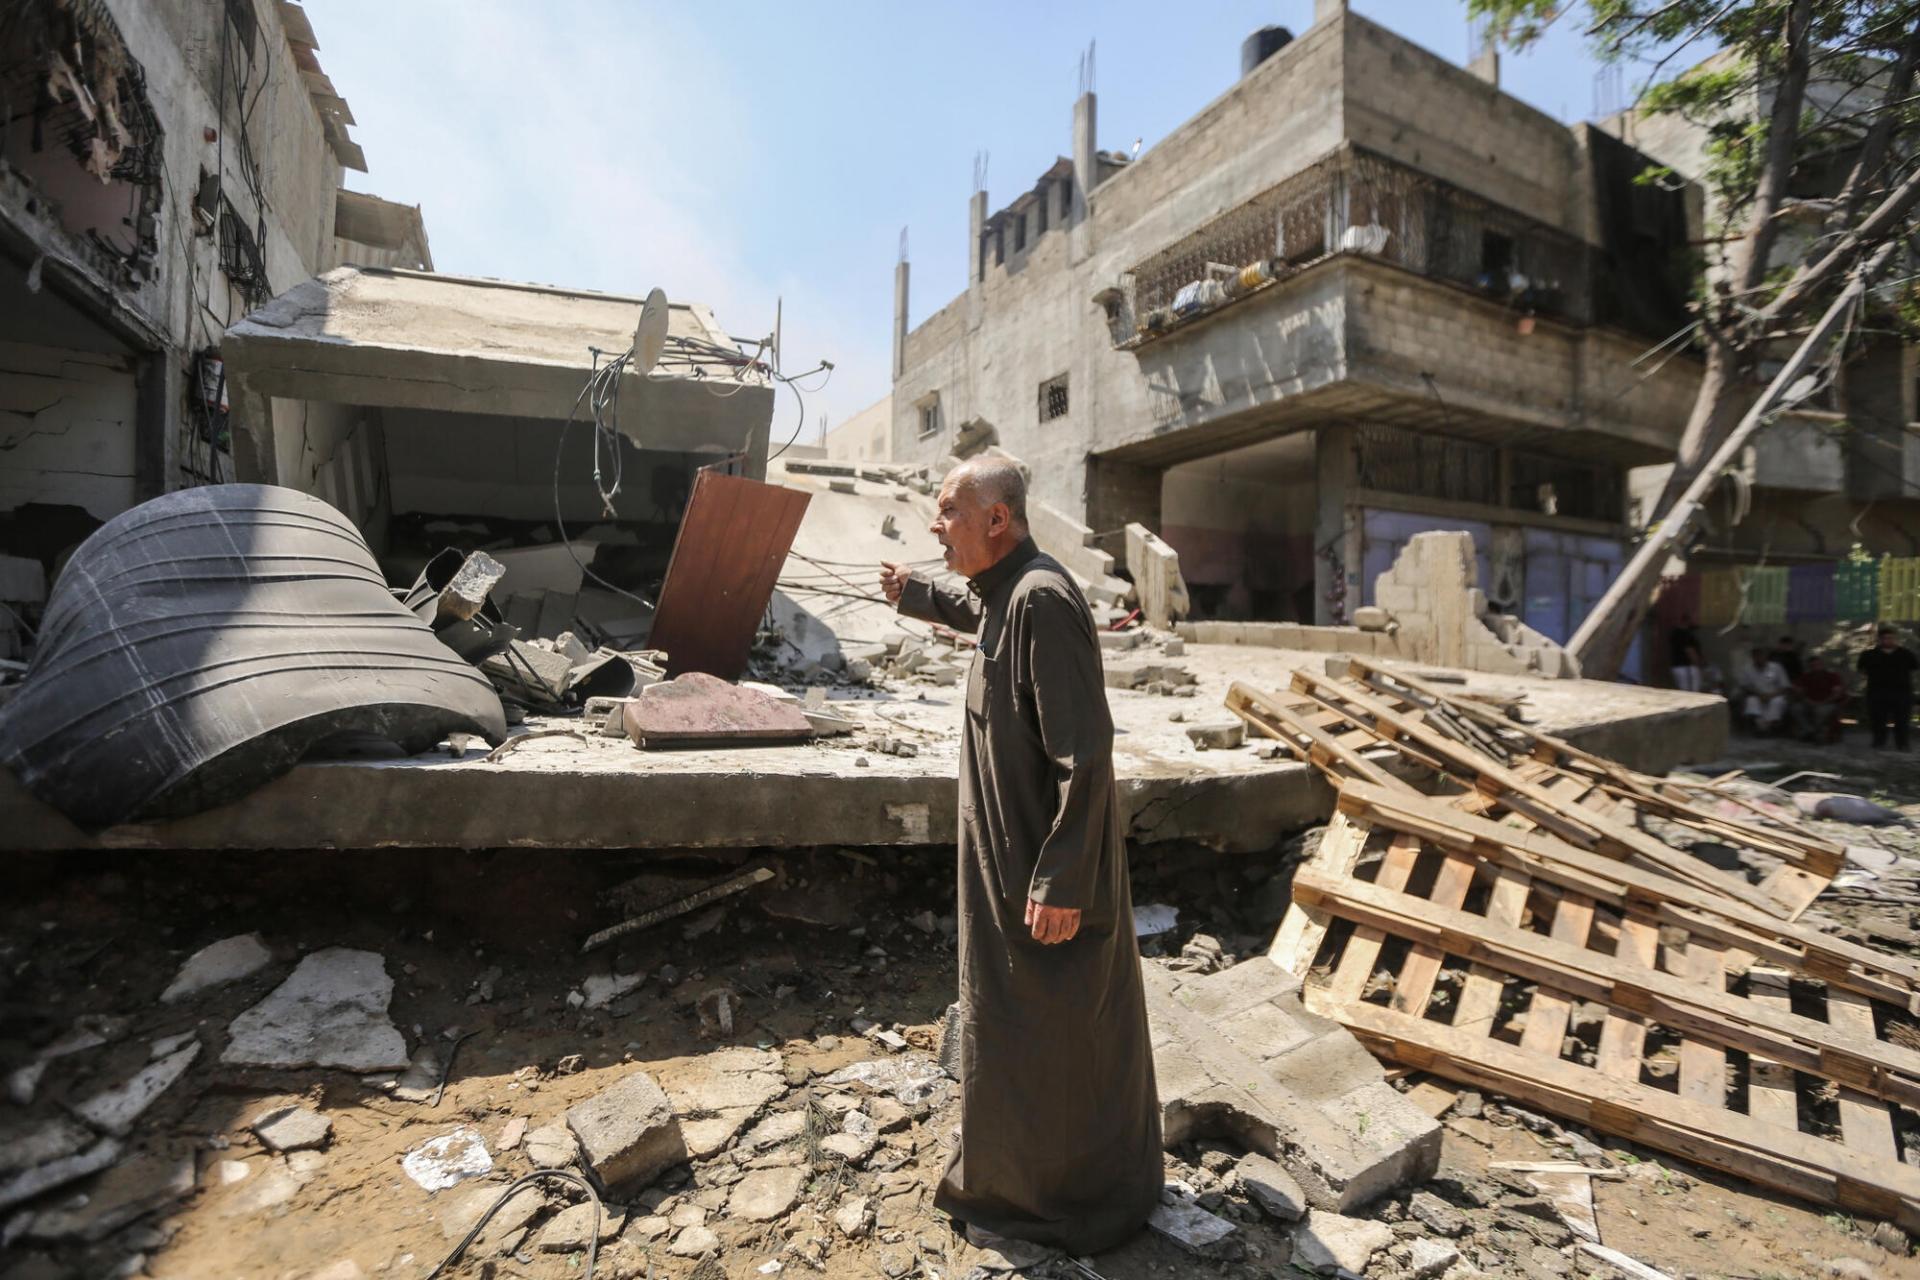 (gauche) À Gaza, une jeune femme marche dans les décombres d’un immeuble partiellement détruit par un bombardement aérien. (droite) Un homme âgé se tient debout au milieu des ruines de son quartier à Gaza. Onze jours de frappes israéliennes massives, de nuit comme de jour, ont causé des dégâts immenses dans l’enclave au mois de mai. 